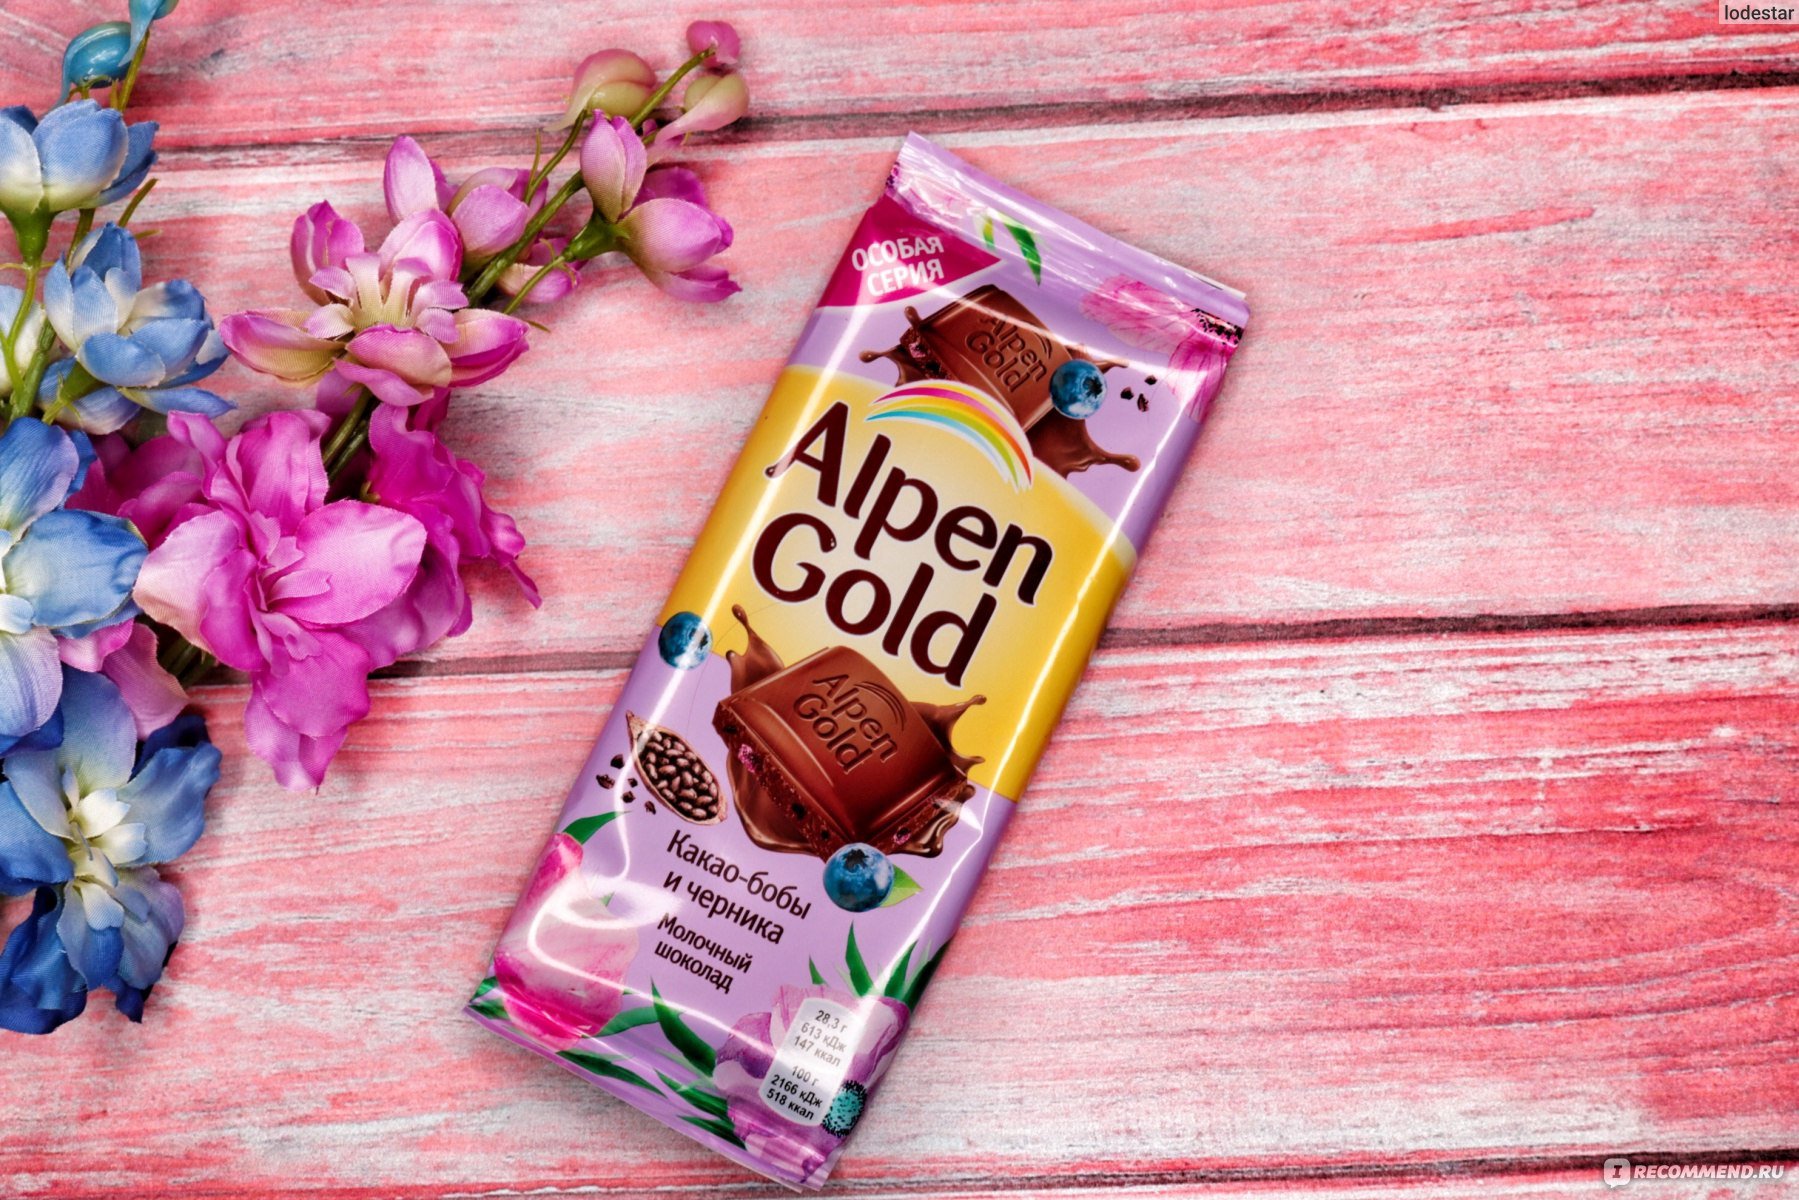 Анпенгольд шоколад. Шоколад Альпен Гольд. Шоколадка Альпен Гольд. Alpen Gold шоколад. Вкусы шоколада Альпен Гольд.